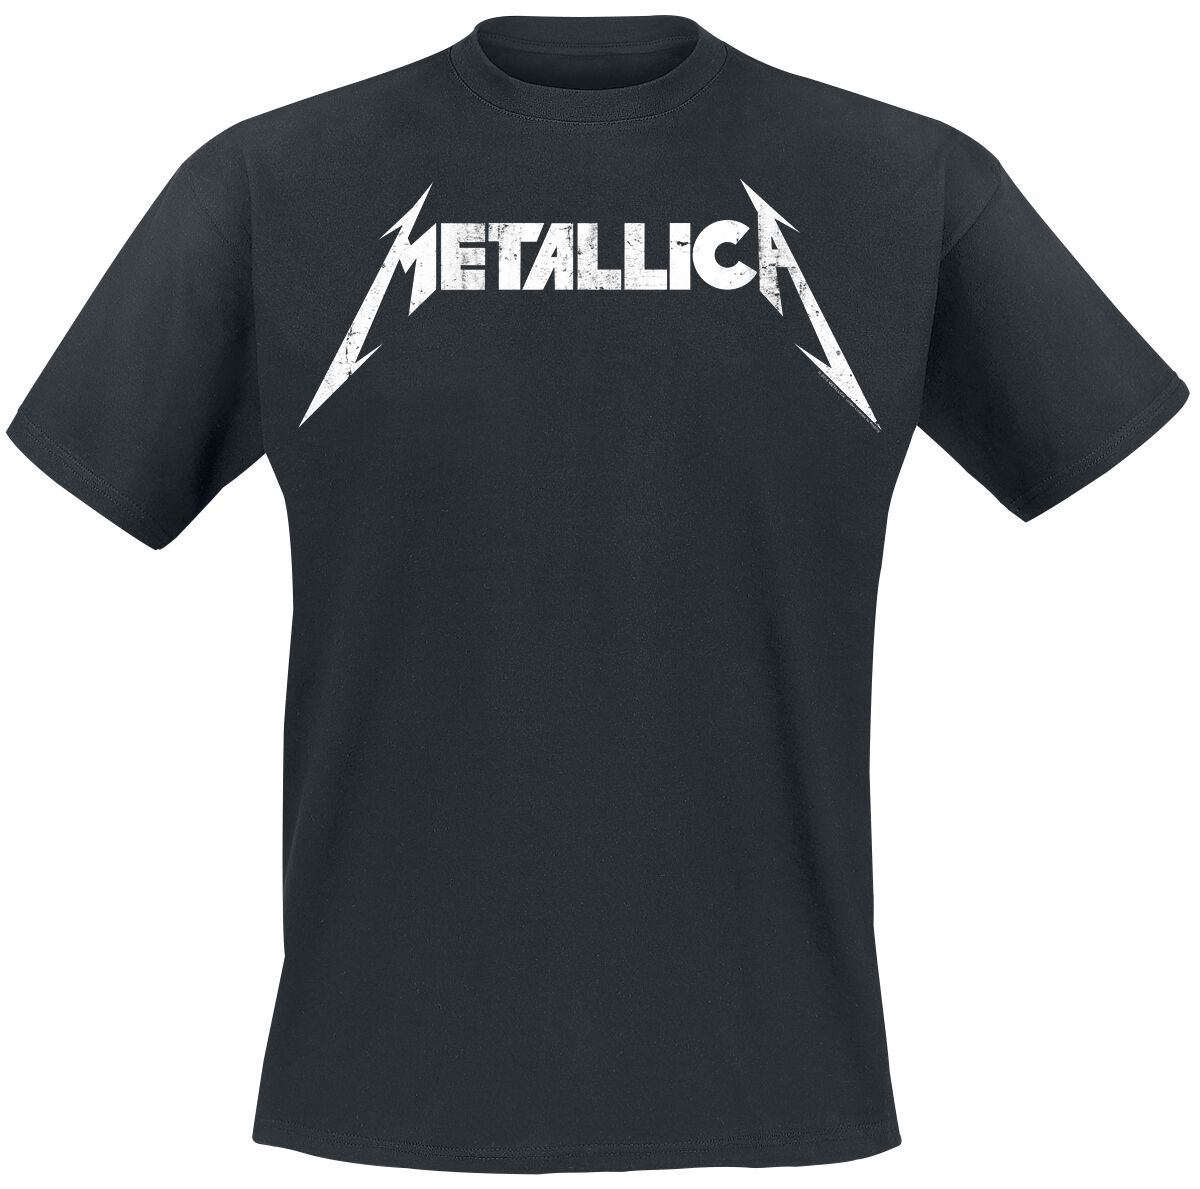 Metallica T-Shirt - Textured Logo - S bis 5XL - für Männer - Größe XXL - schwarz  - Lizenziertes Merchandise!